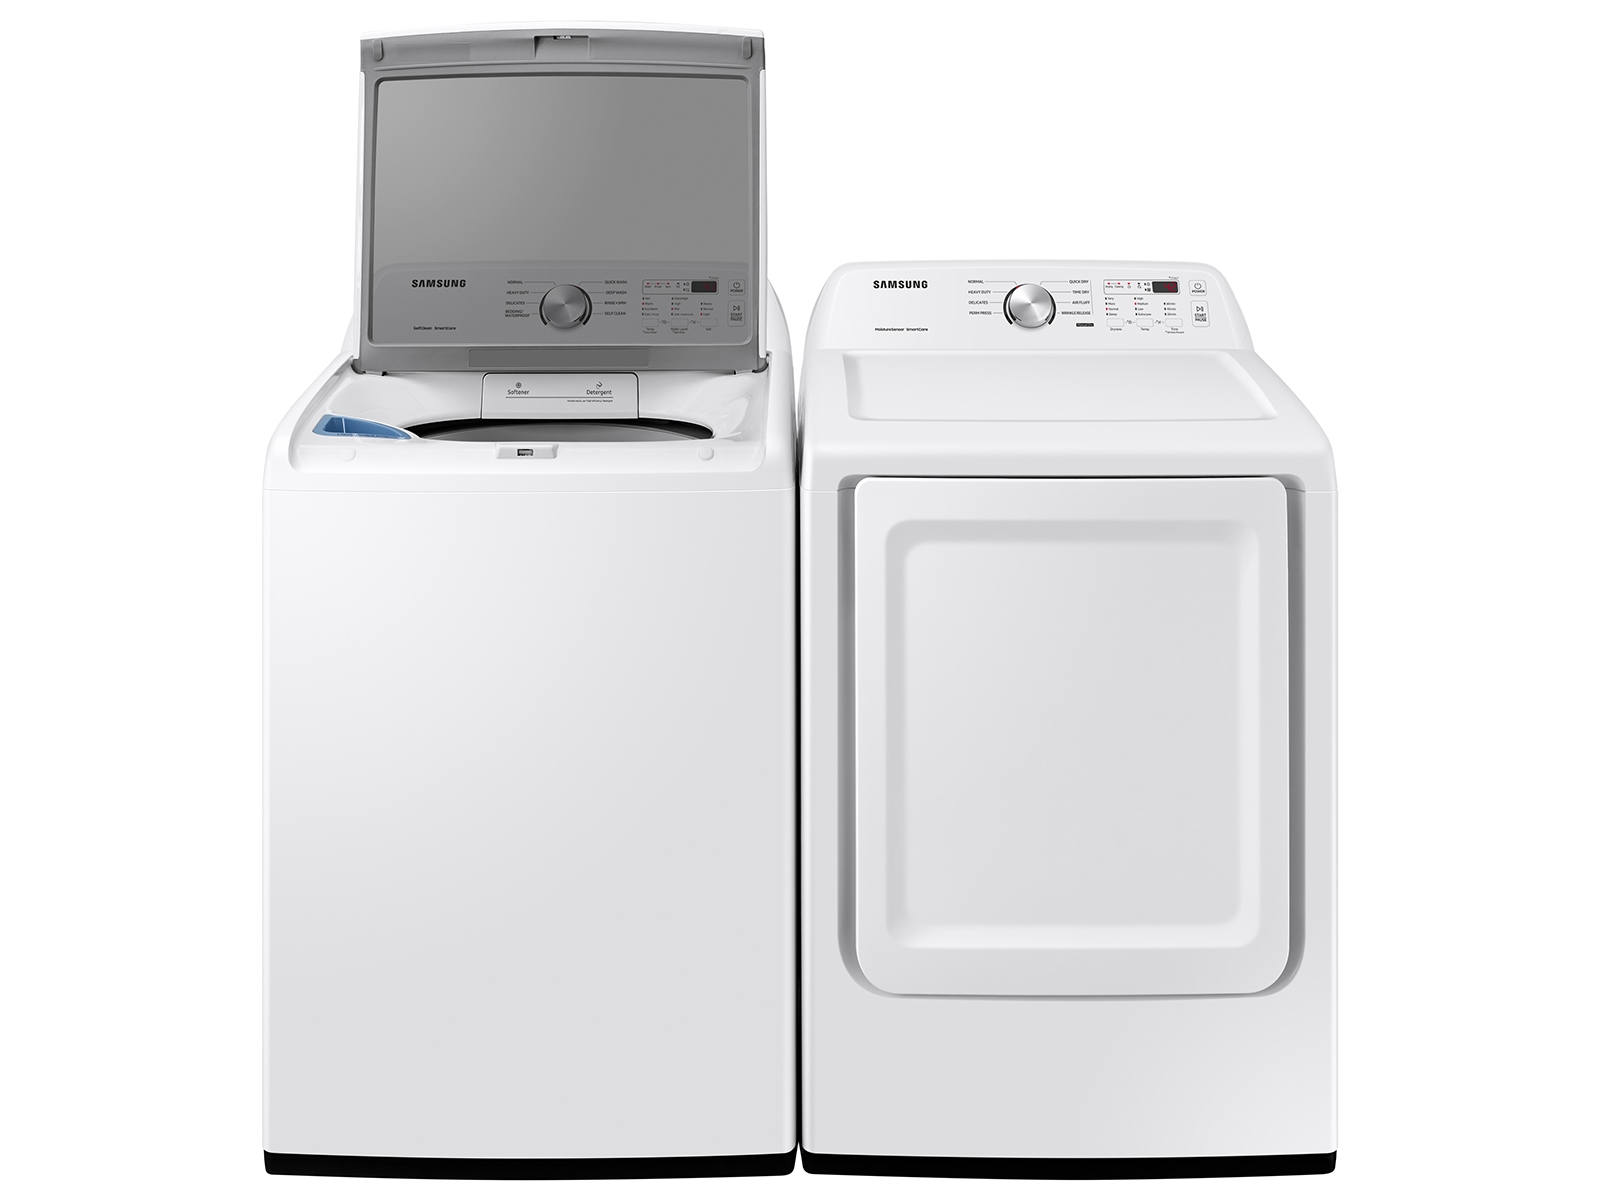 Secadora eléctrica de 7.2 cúbicos Dry, en blanco Secadoras -DVE45T3200W/A3 | Samsung US